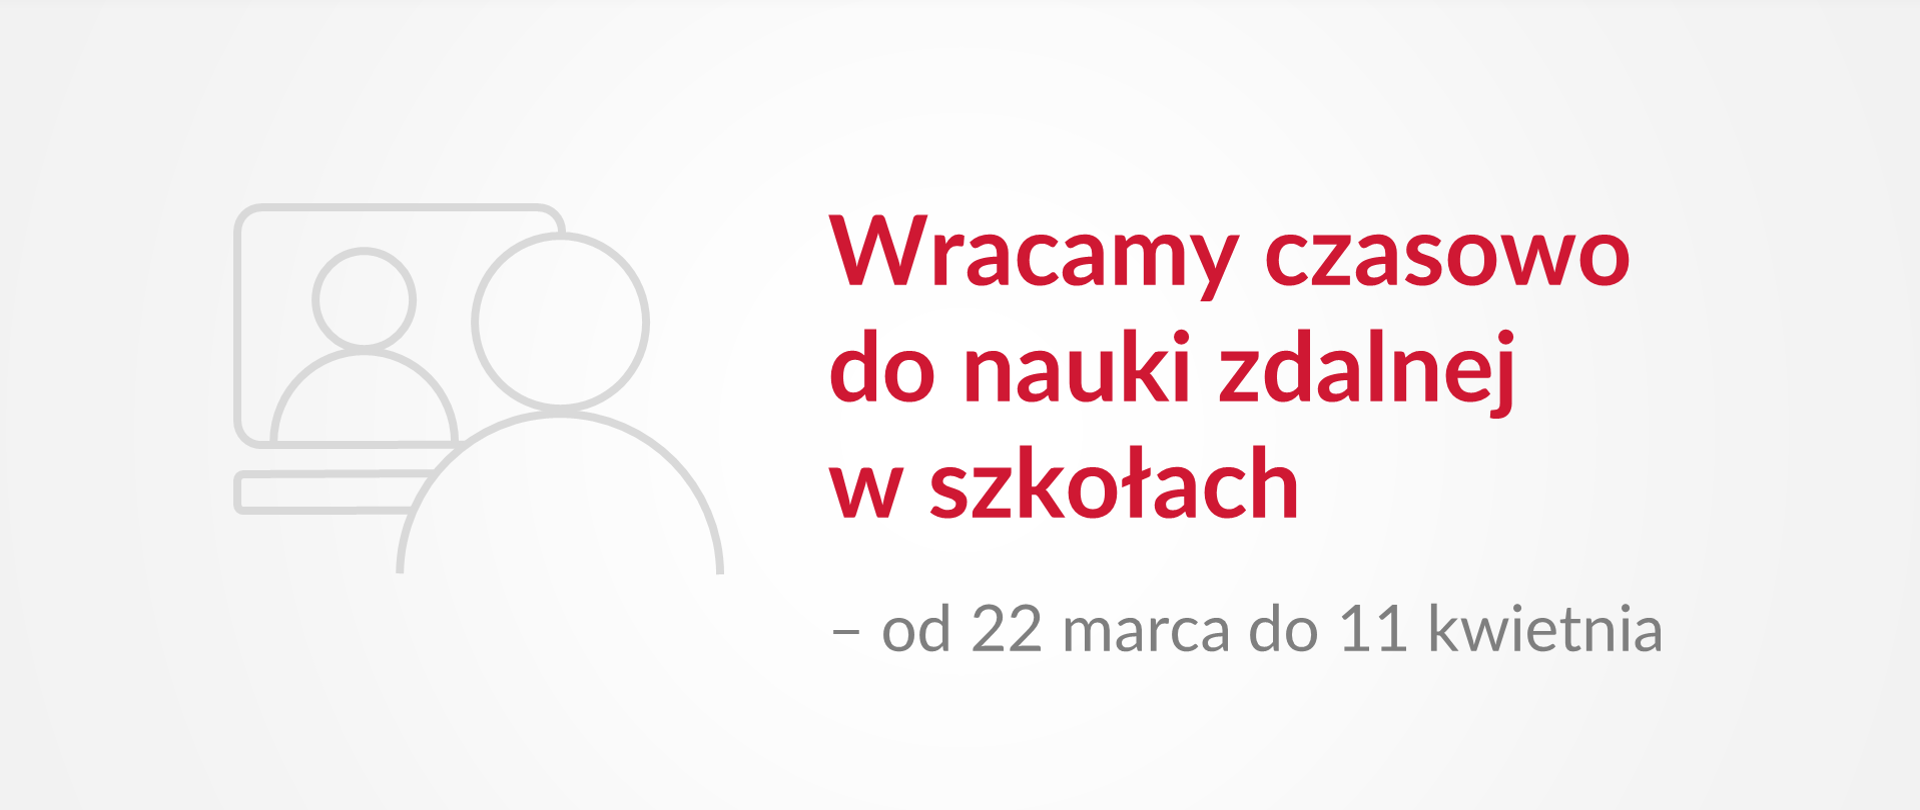 Grafika z tekstem: "Wracamy czasowo do nauki zdalnej w szkołach – od 22 marca do 11 kwietnia"